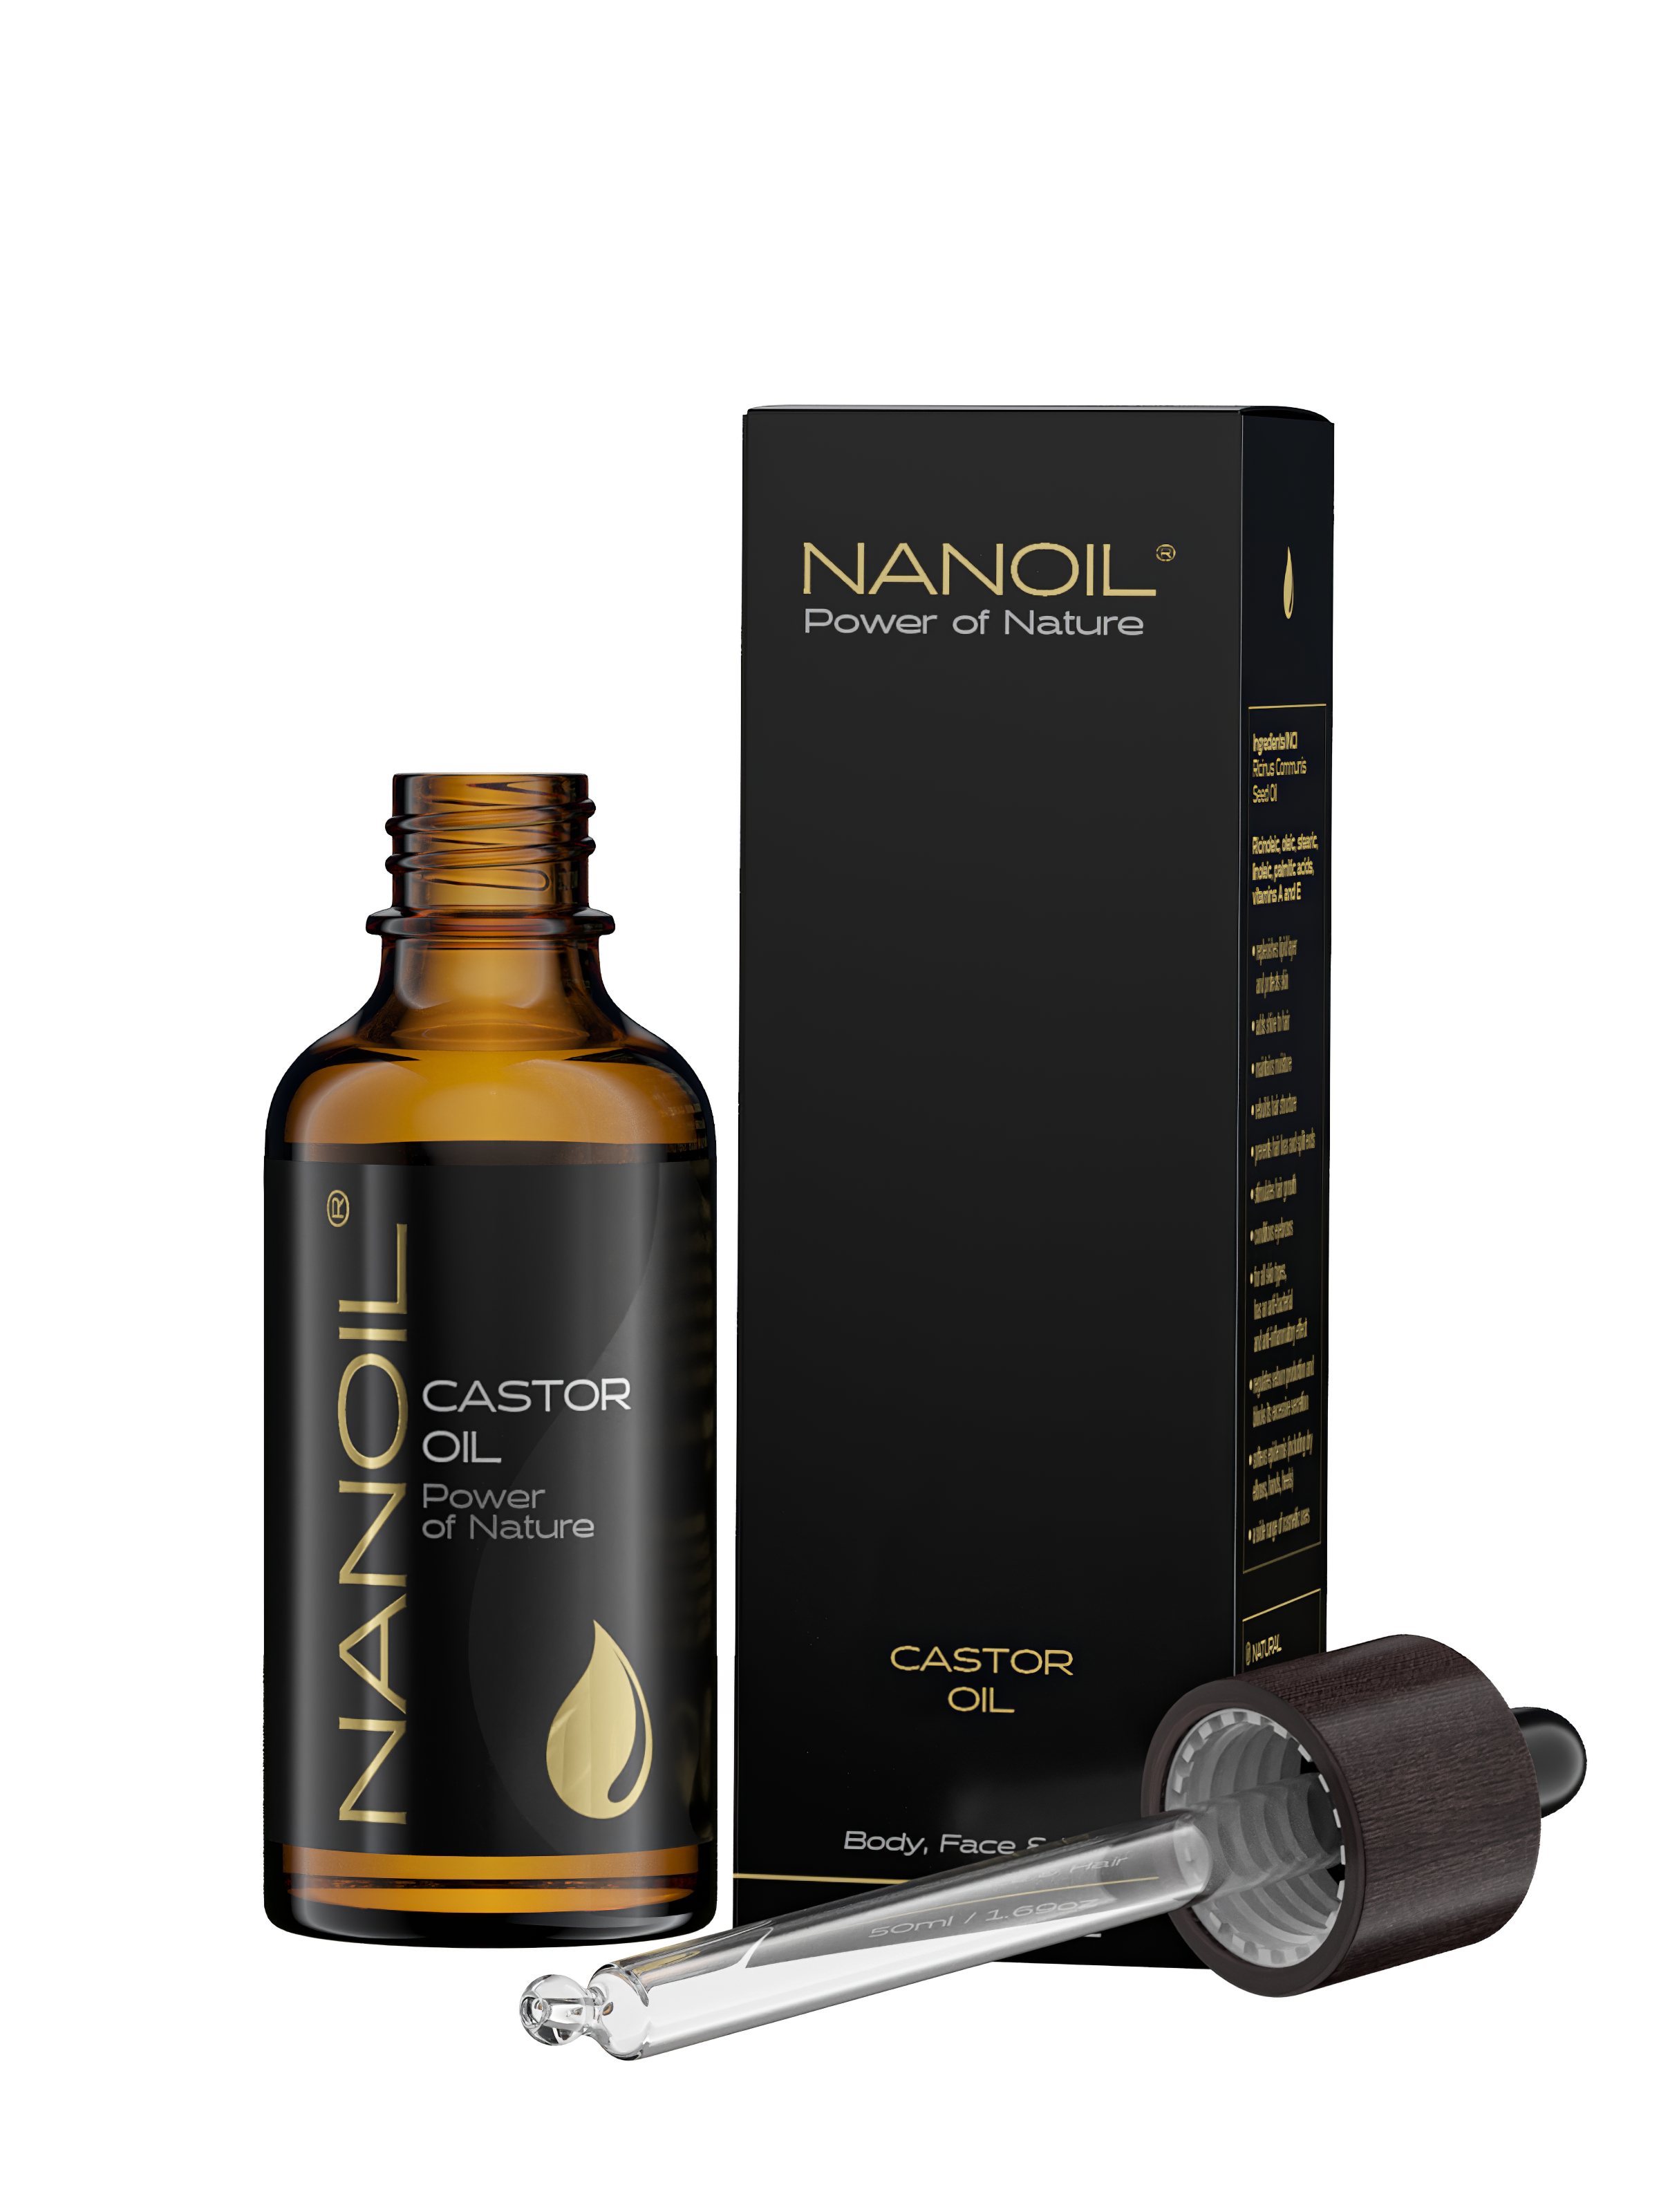 Nanoil organic castor oil